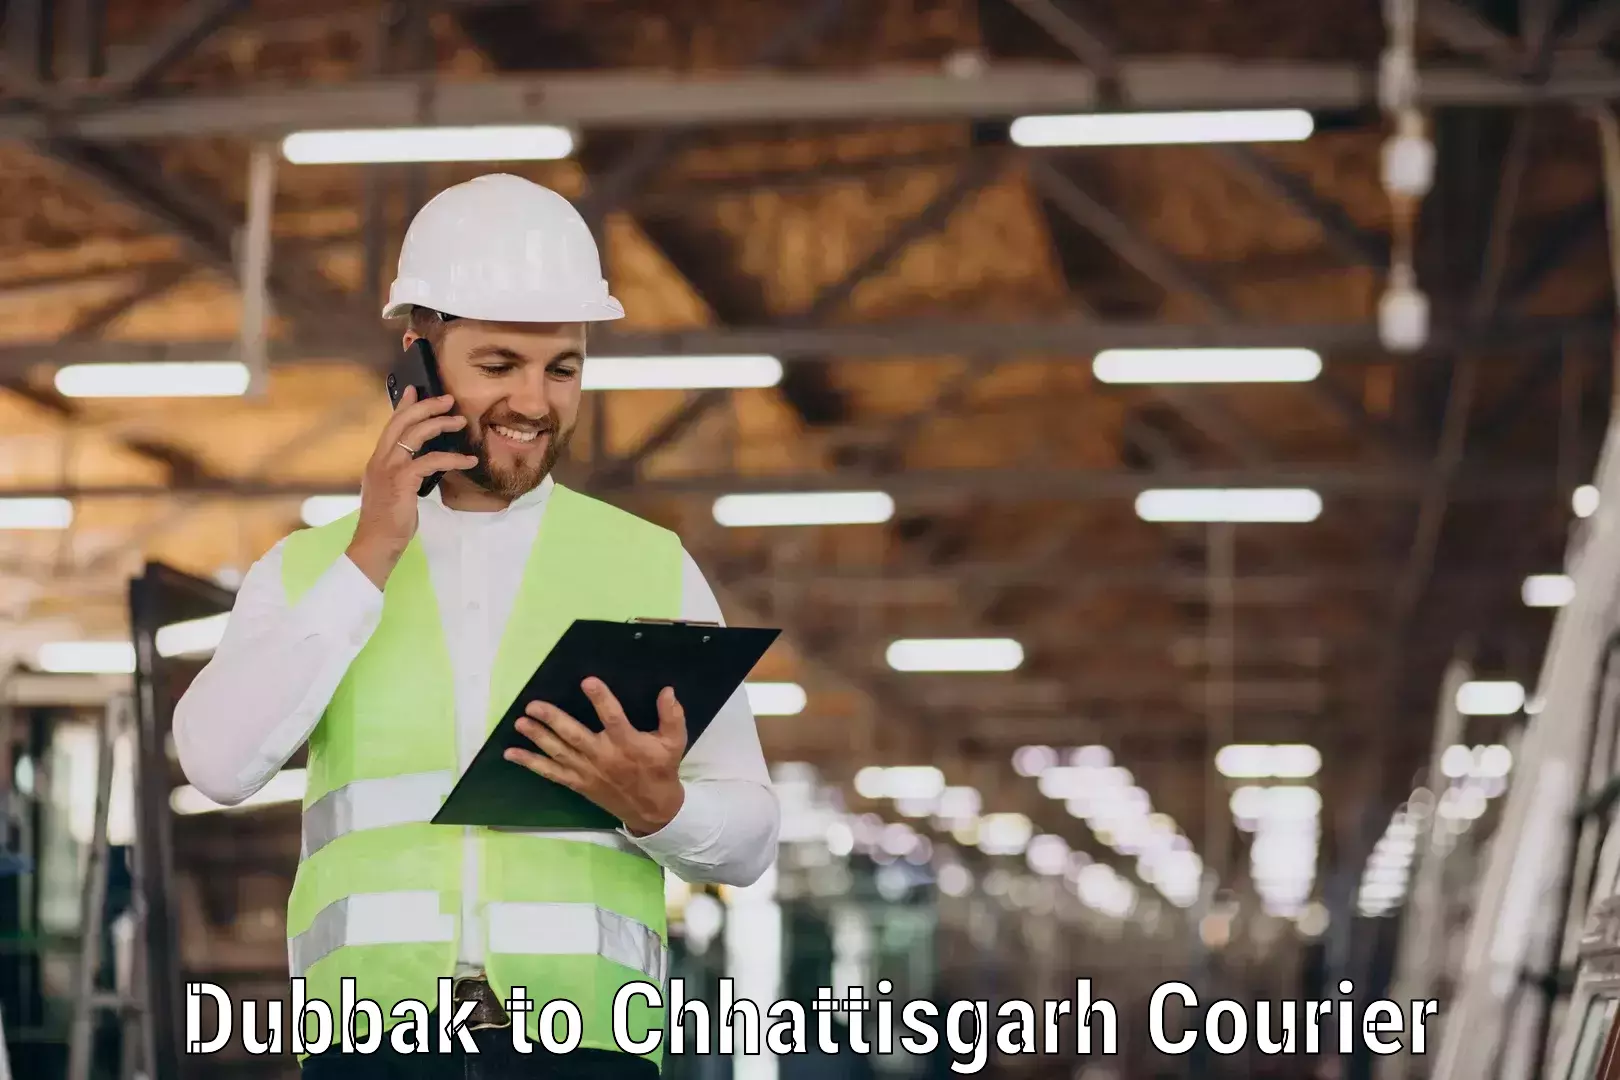 High-speed parcel service Dubbak to Chhattisgarh